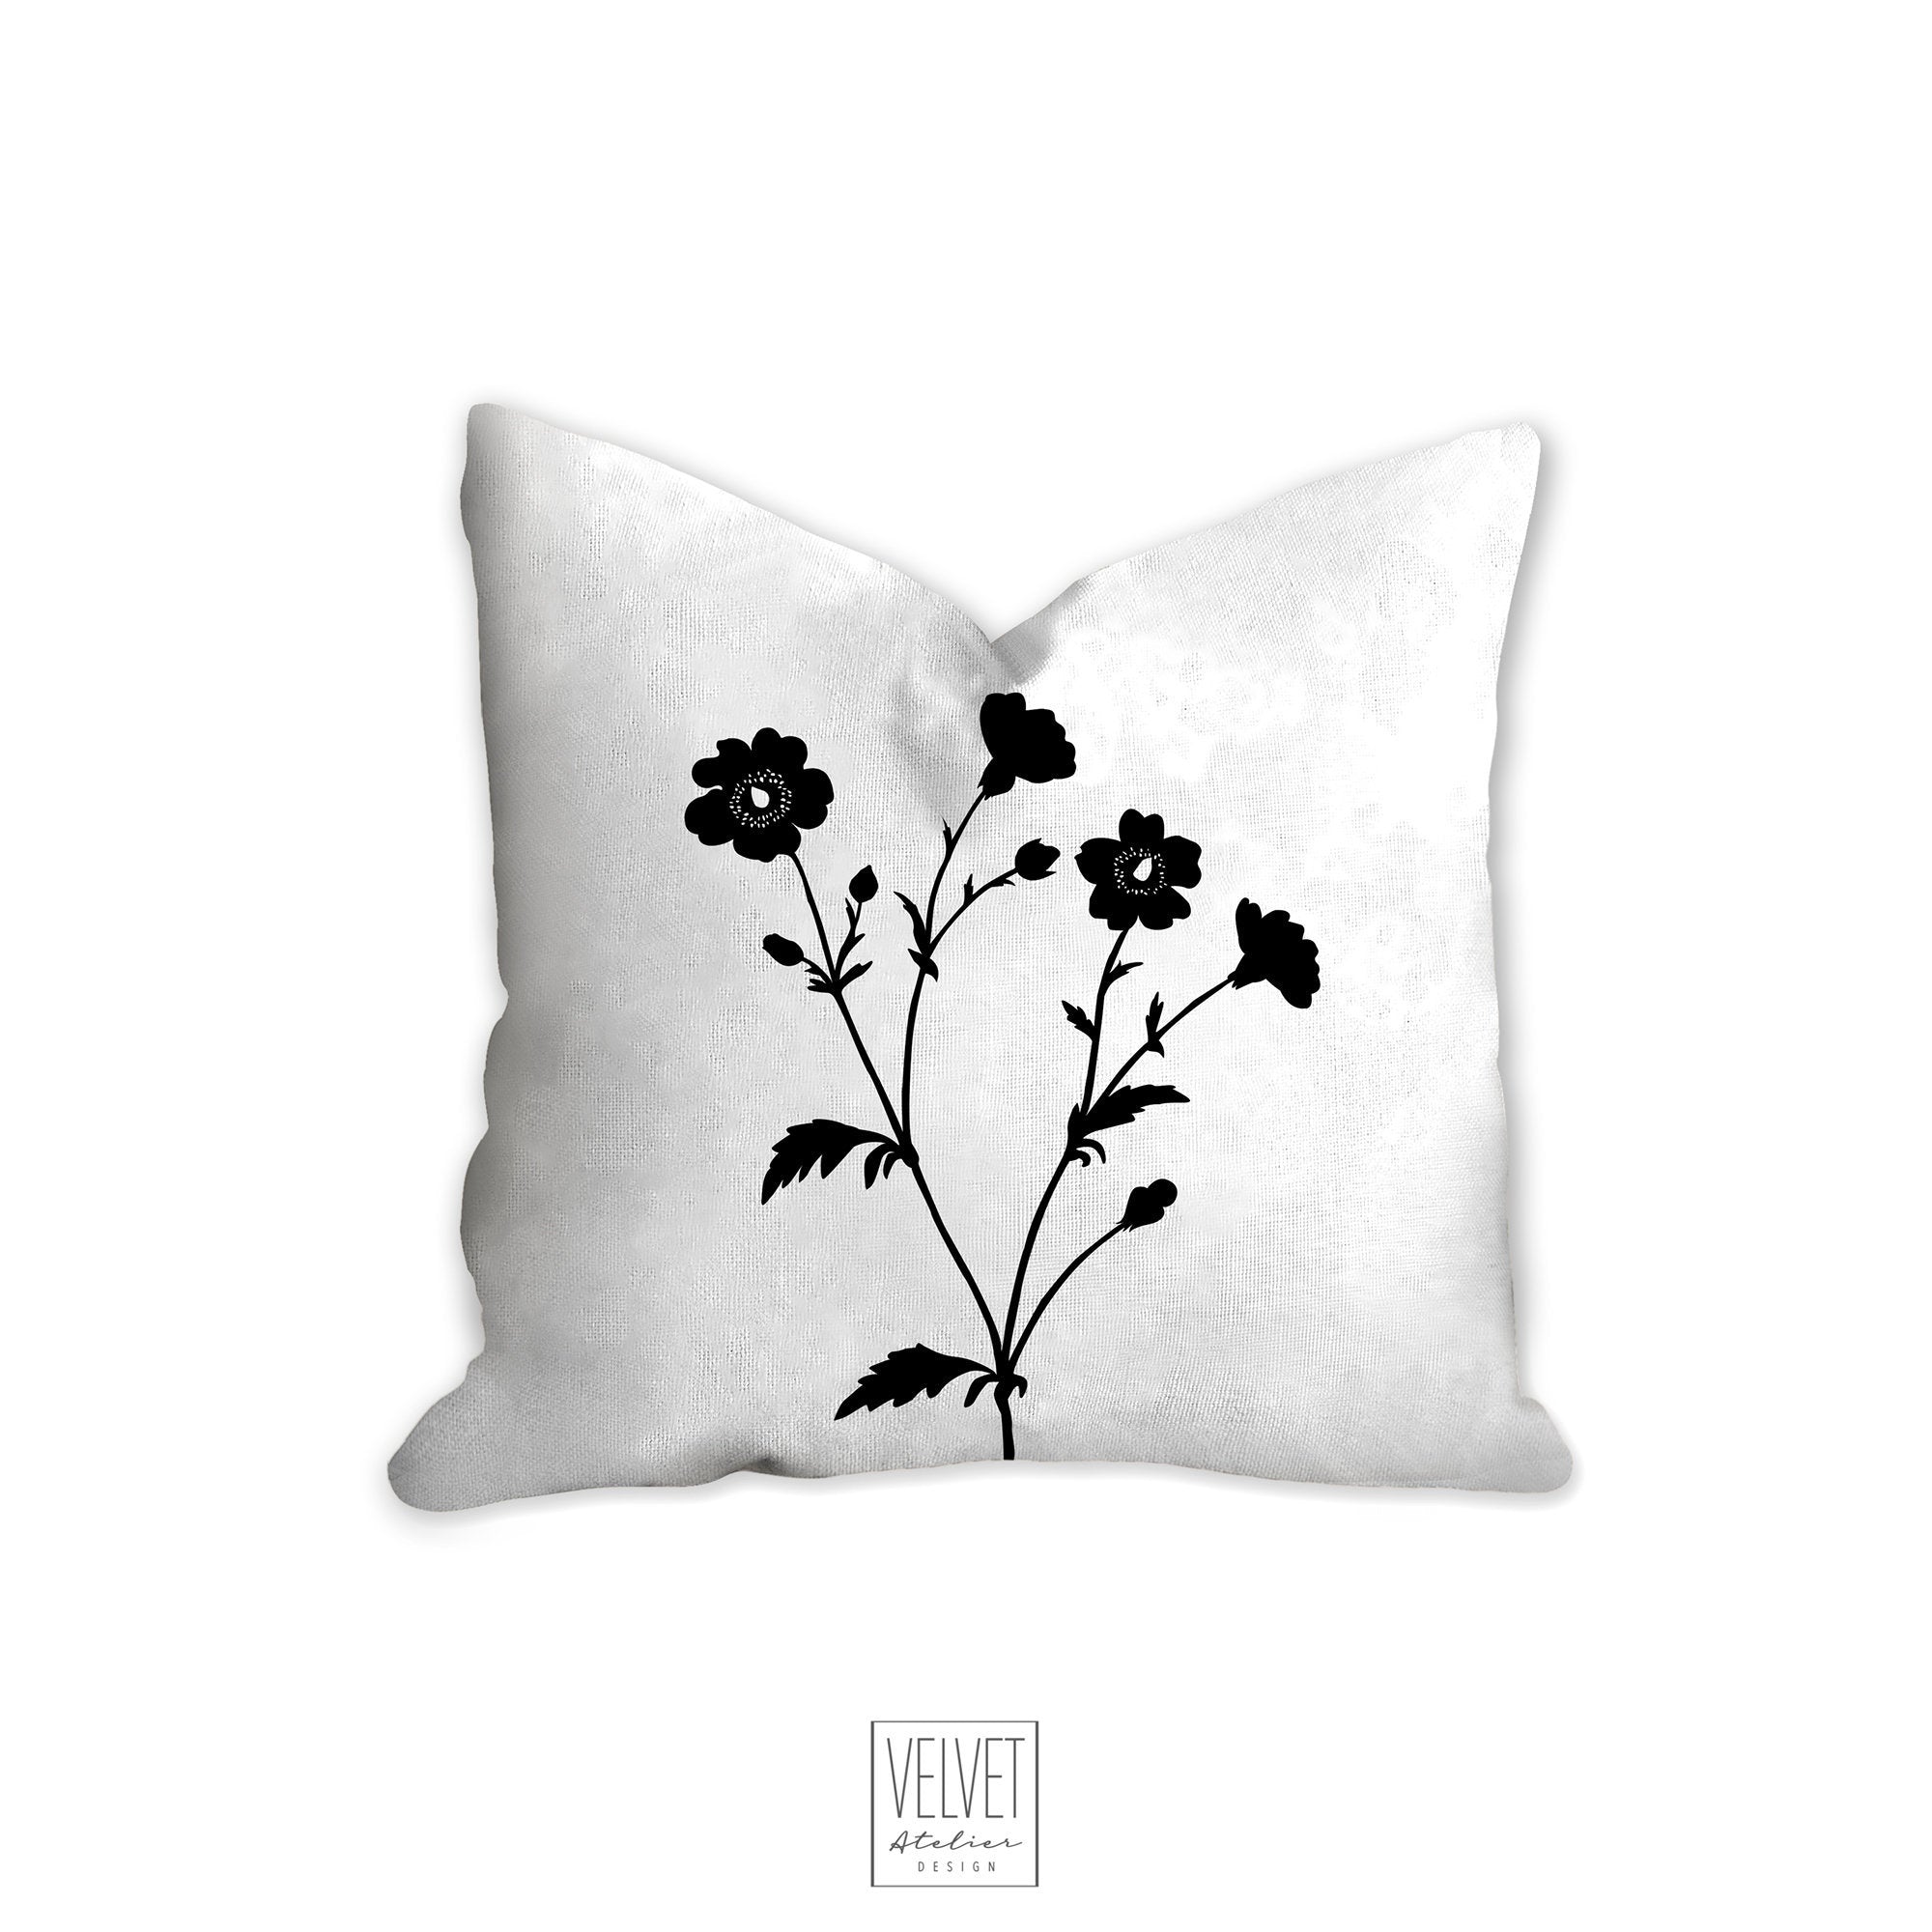 Floral pillow, black and white flowers, botanical, garden flowers, nat –  Velvet Atelier Design